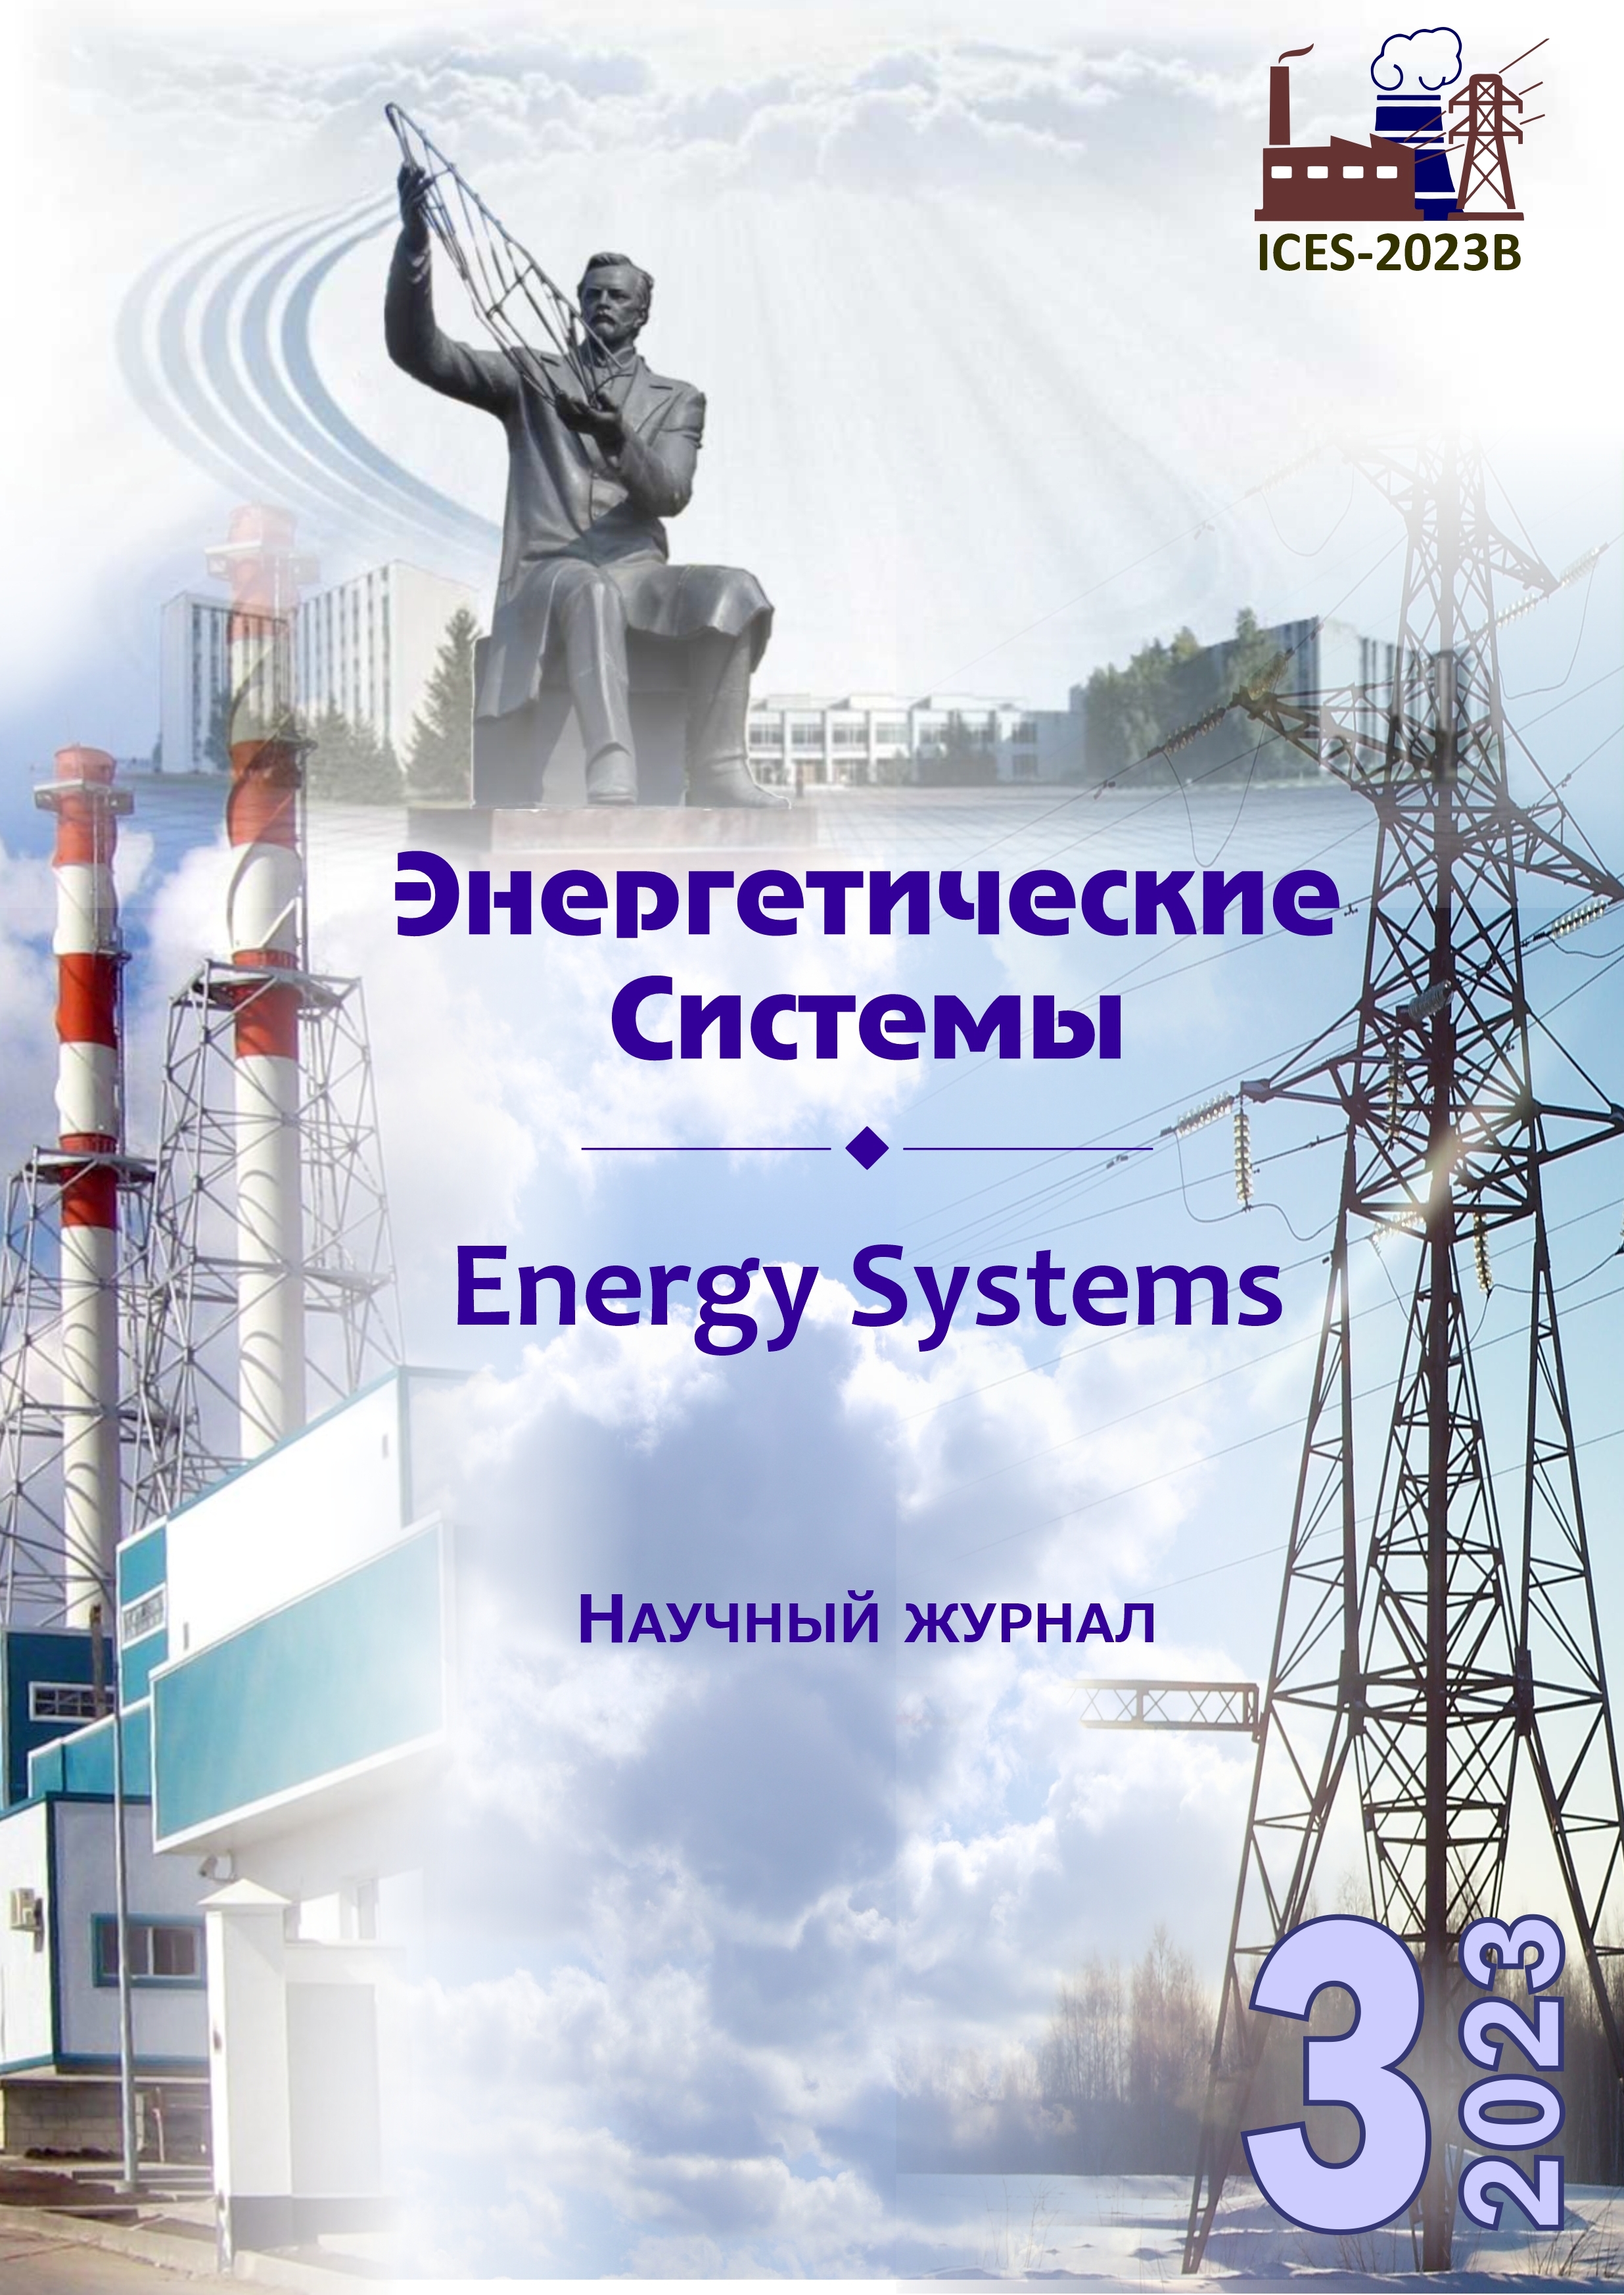 					Показать Том 8 № 3 (2023): VIII международная научно-техническая конференция «Энергетические системы» (ICES-2023B)
				